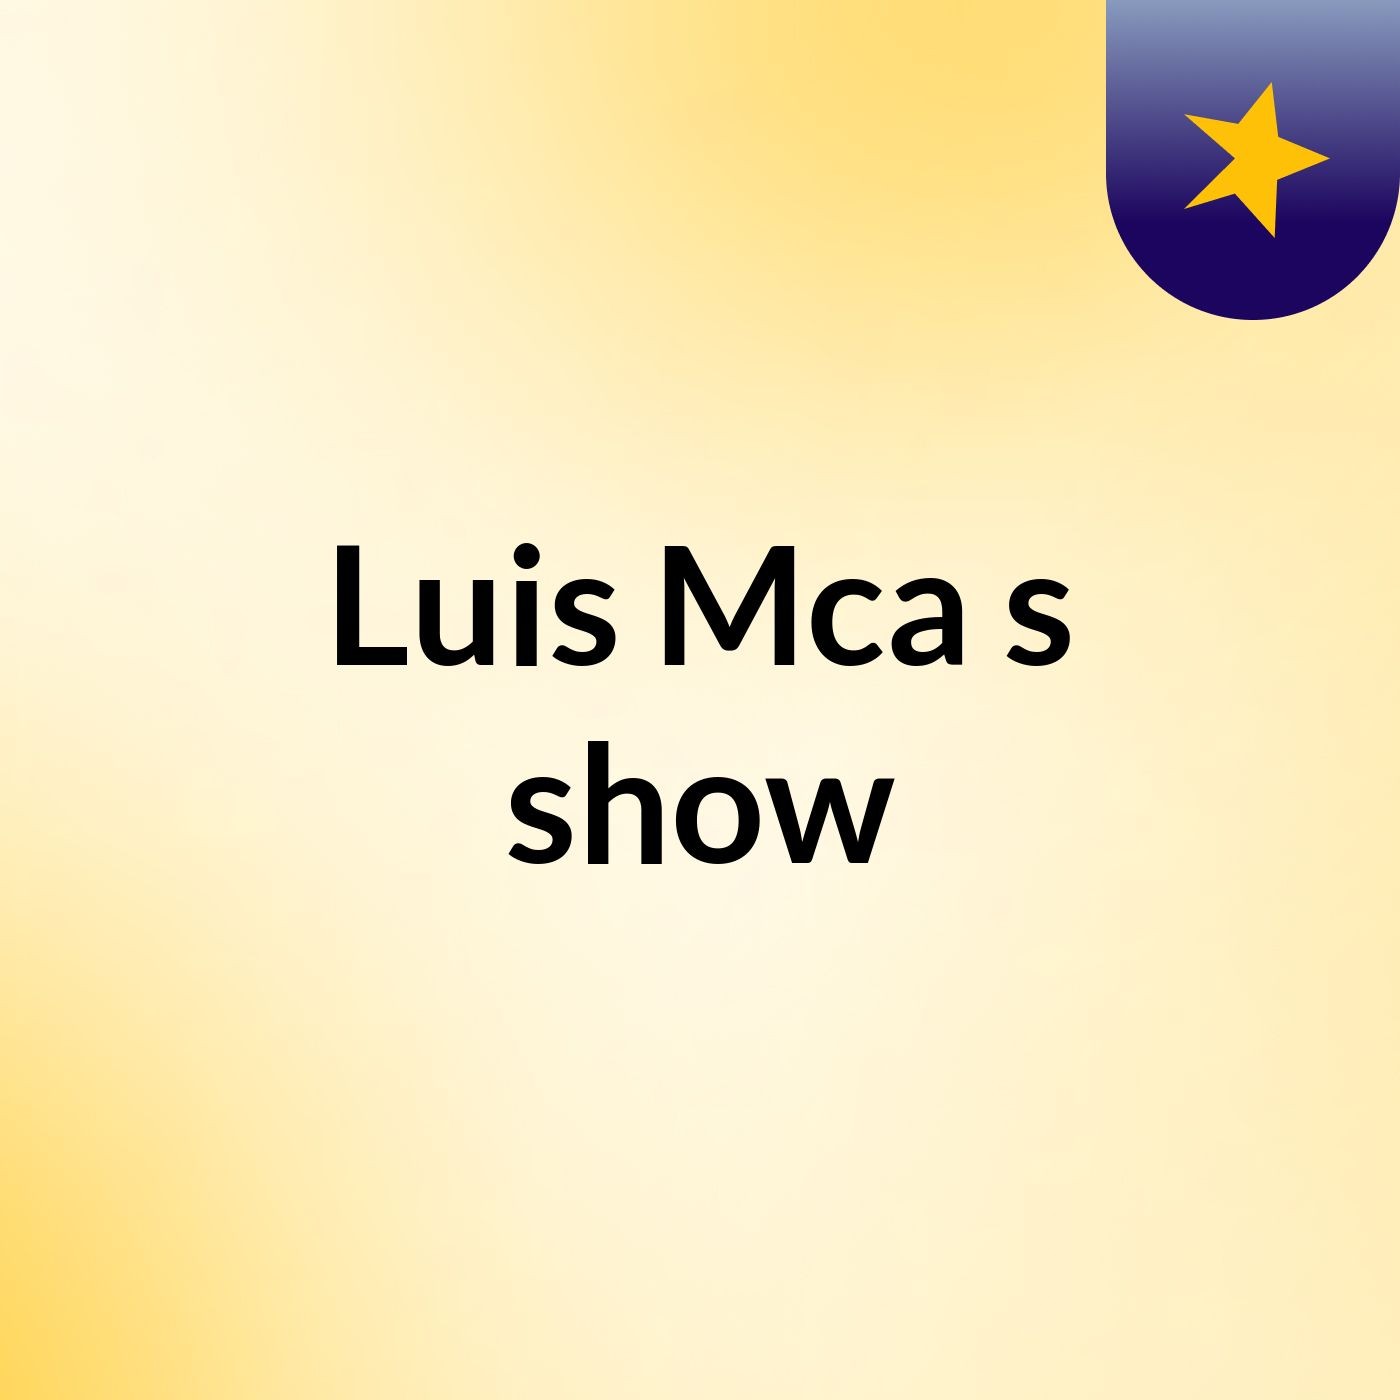 Luis Mca's show